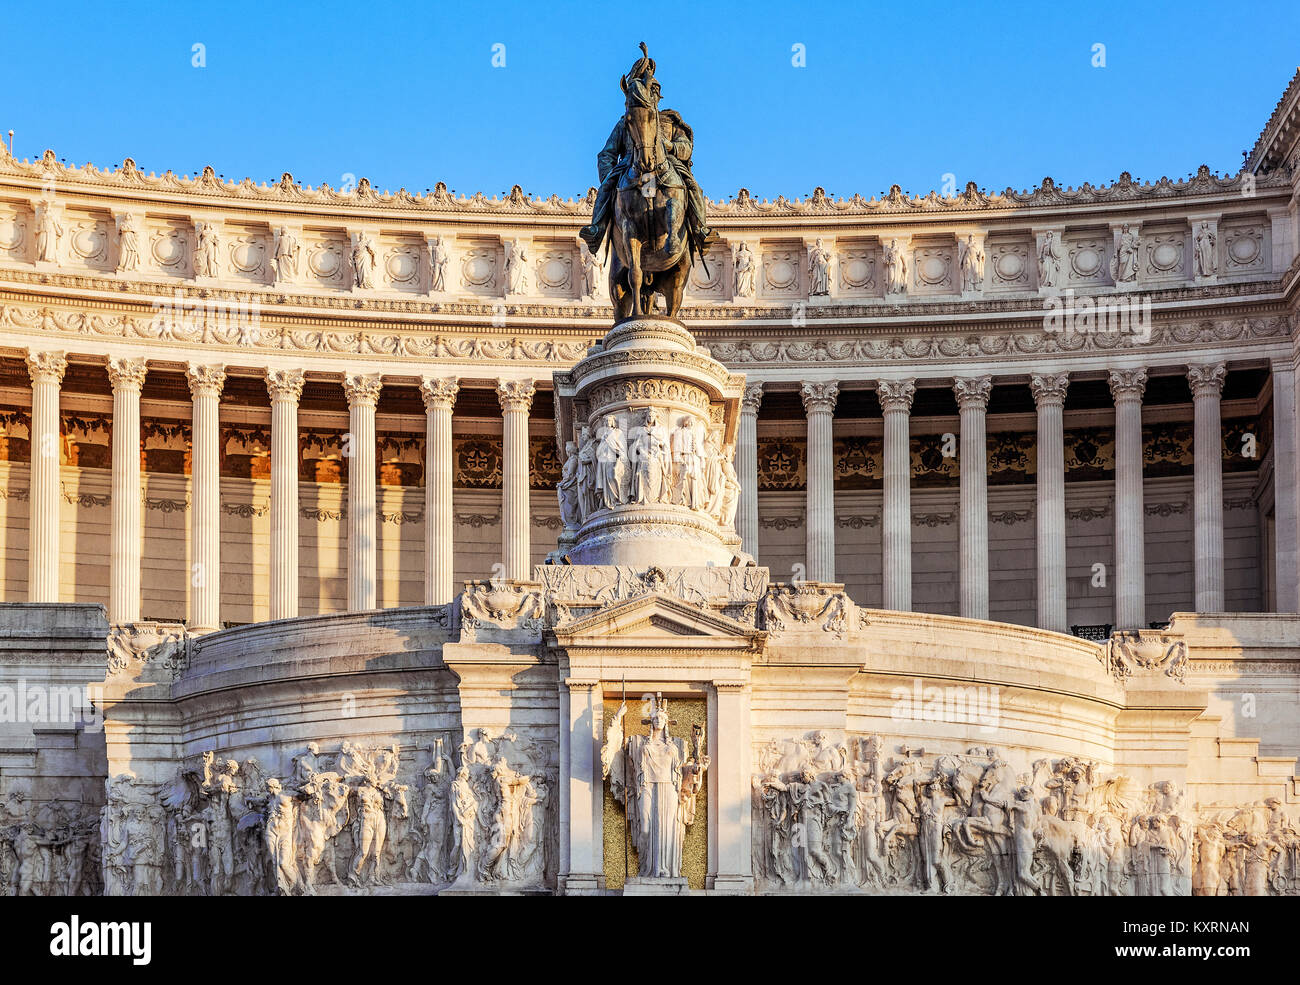 Monumento a Vittorio Emanuele II, Via del Teatro di Marcello, Rome, Italy. Stock Photo